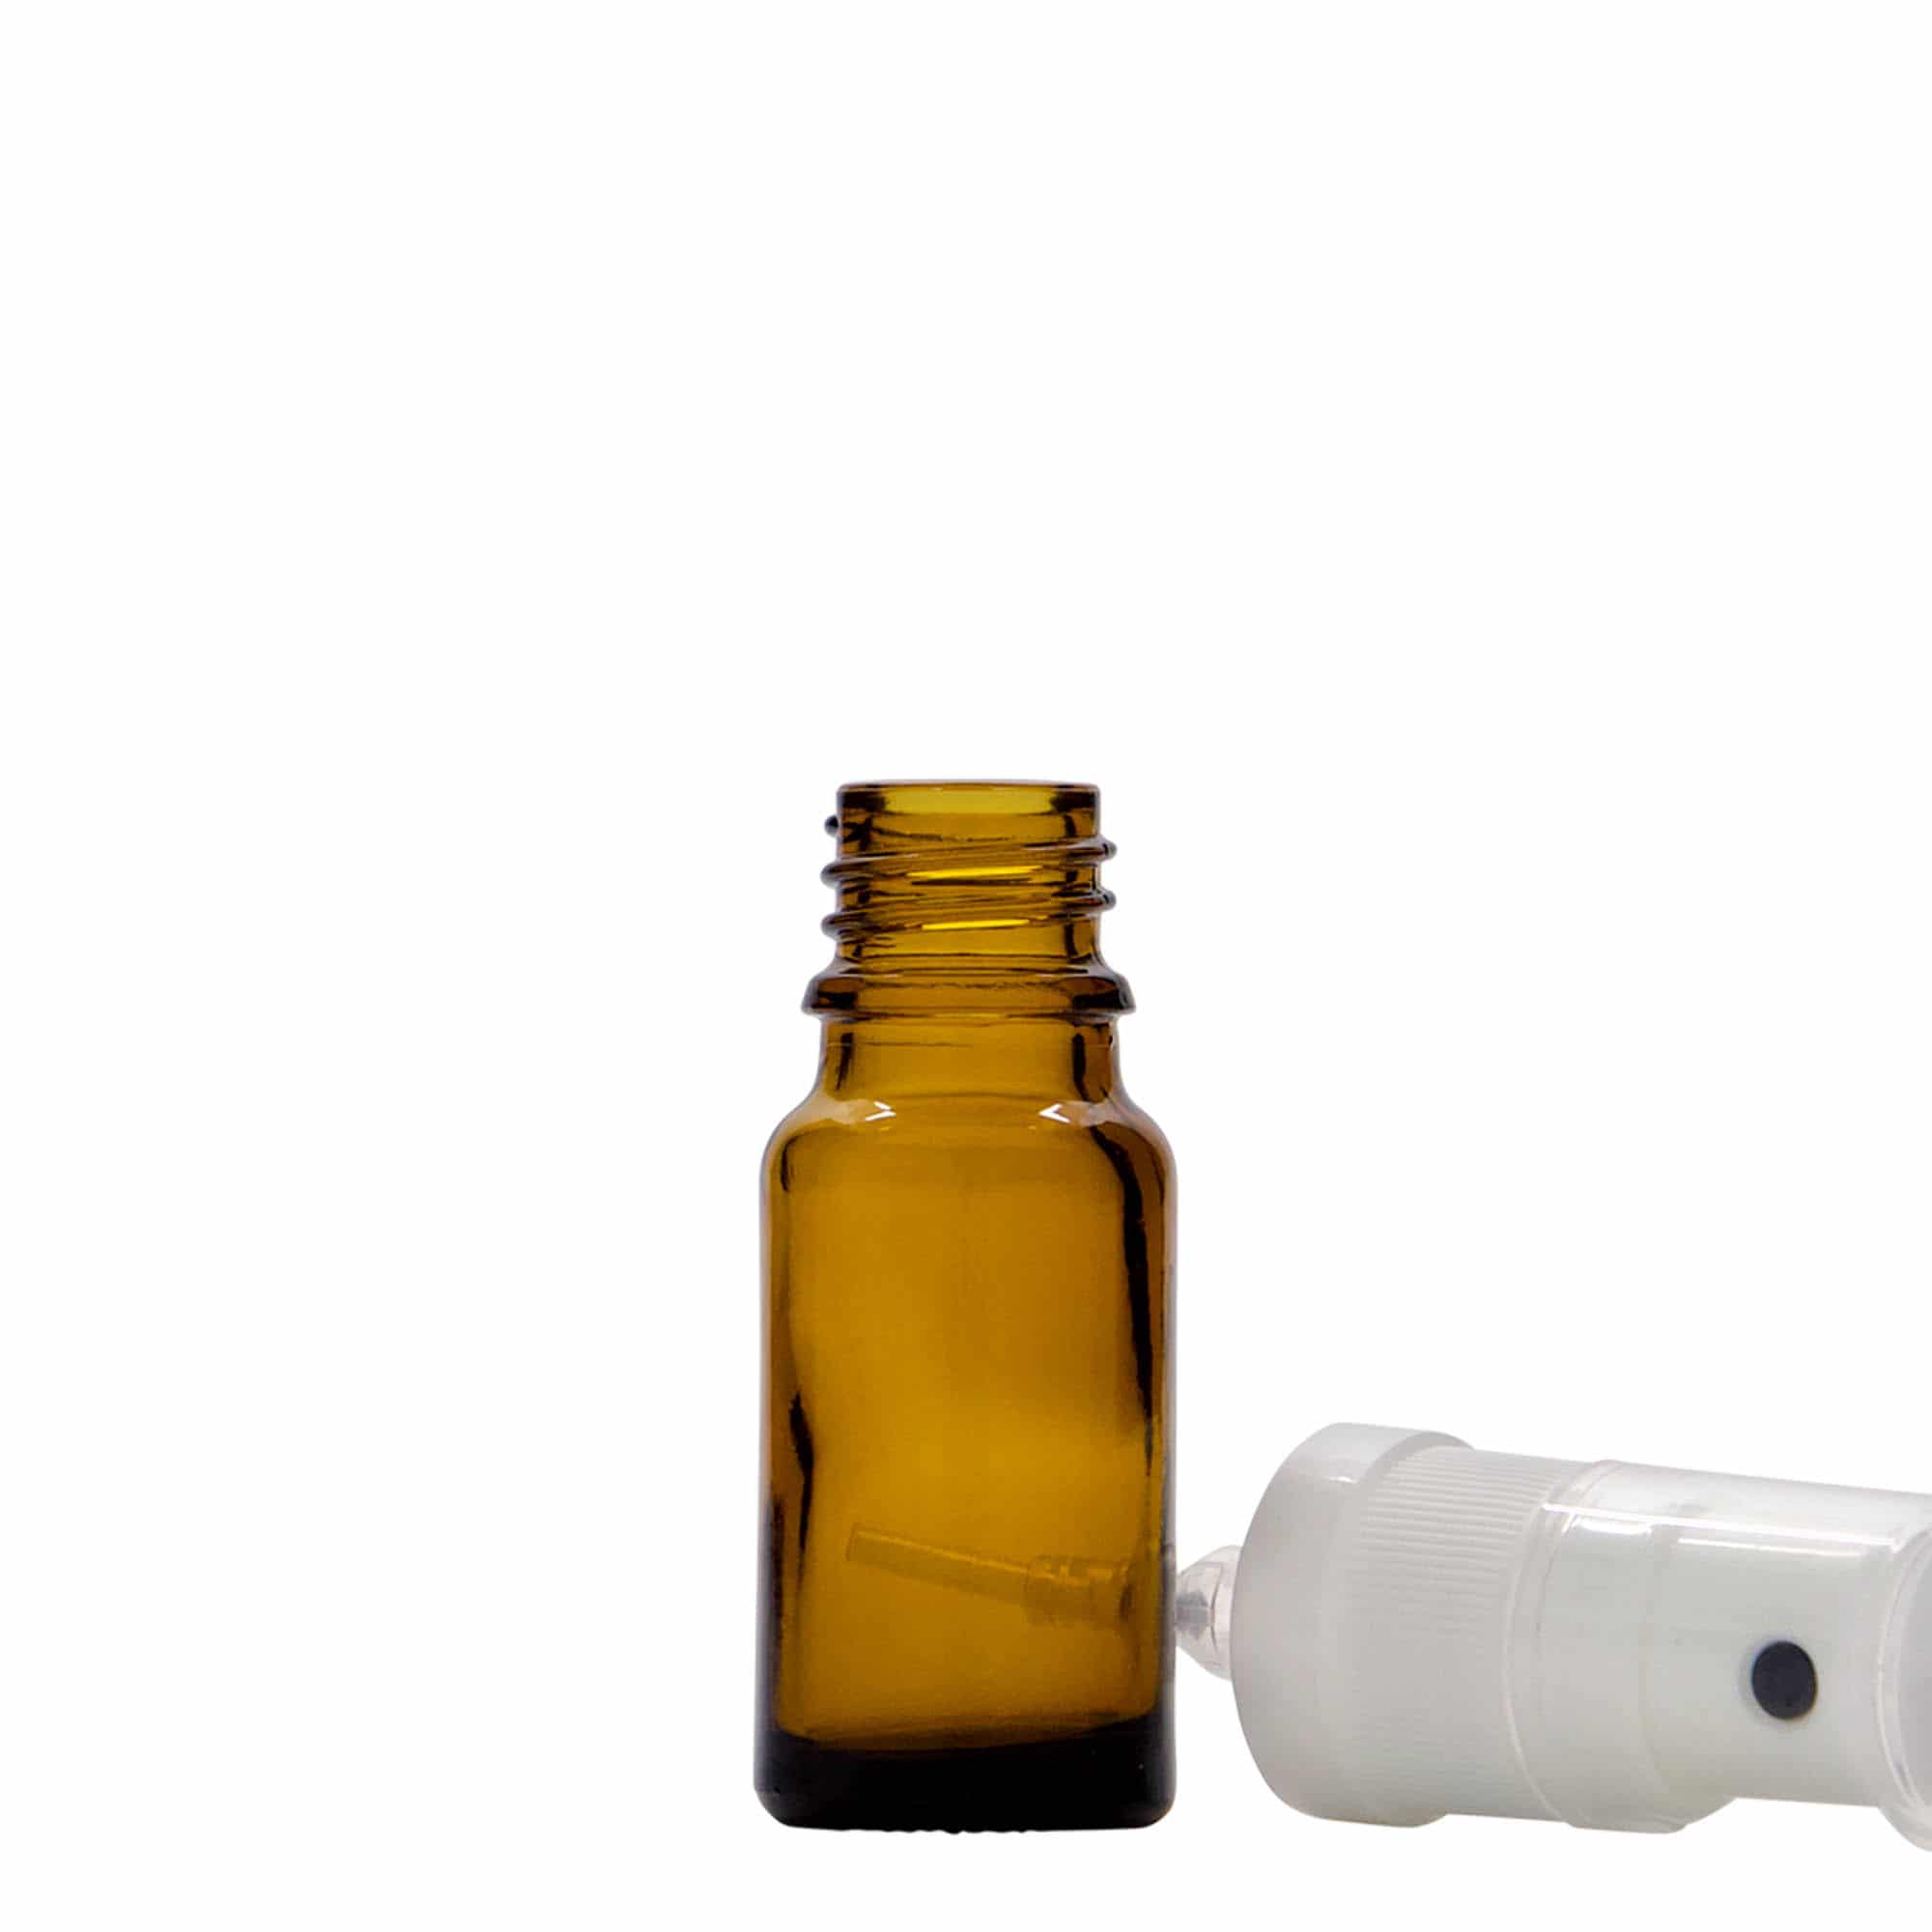 10 ml Flacone spray farmaceutico, vetro, marrone, imboccatura: DIN 18